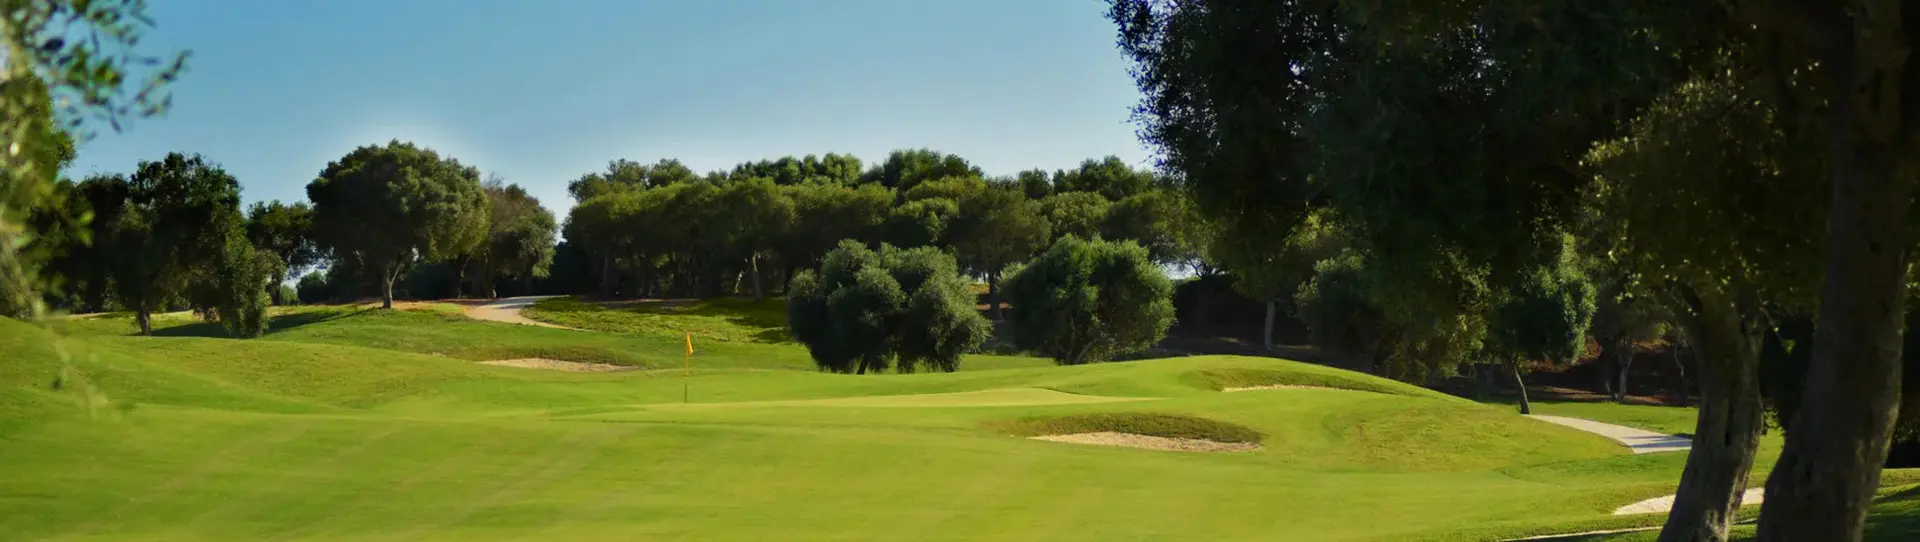 Spain golf courses - Fairplay Golf Course - Photo 3